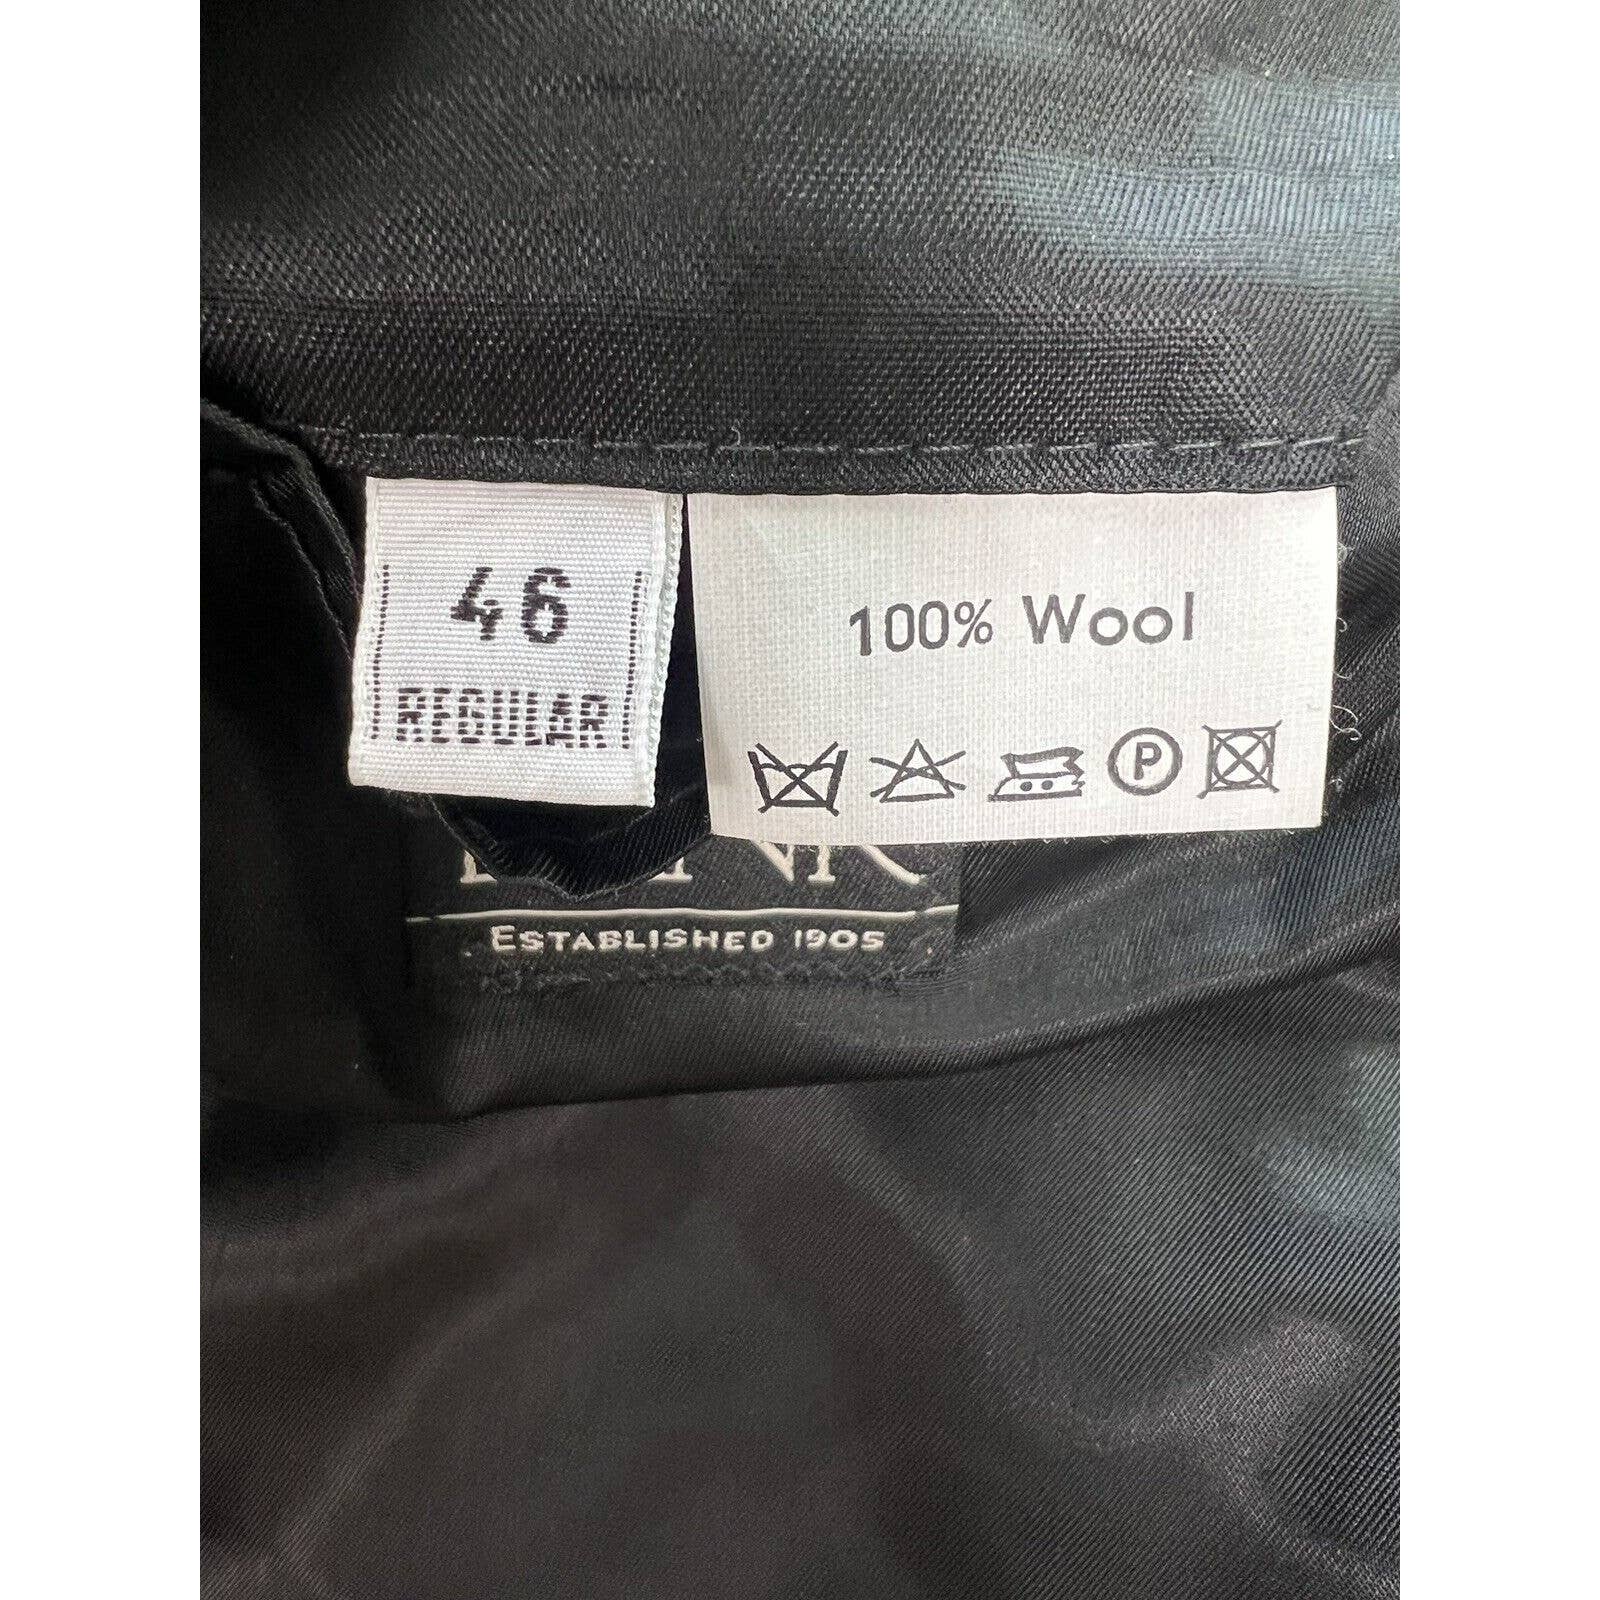 Harris Tweed 2 Button Sport Coat Mens 46R Black Herringbone Wool Jacket Blazer